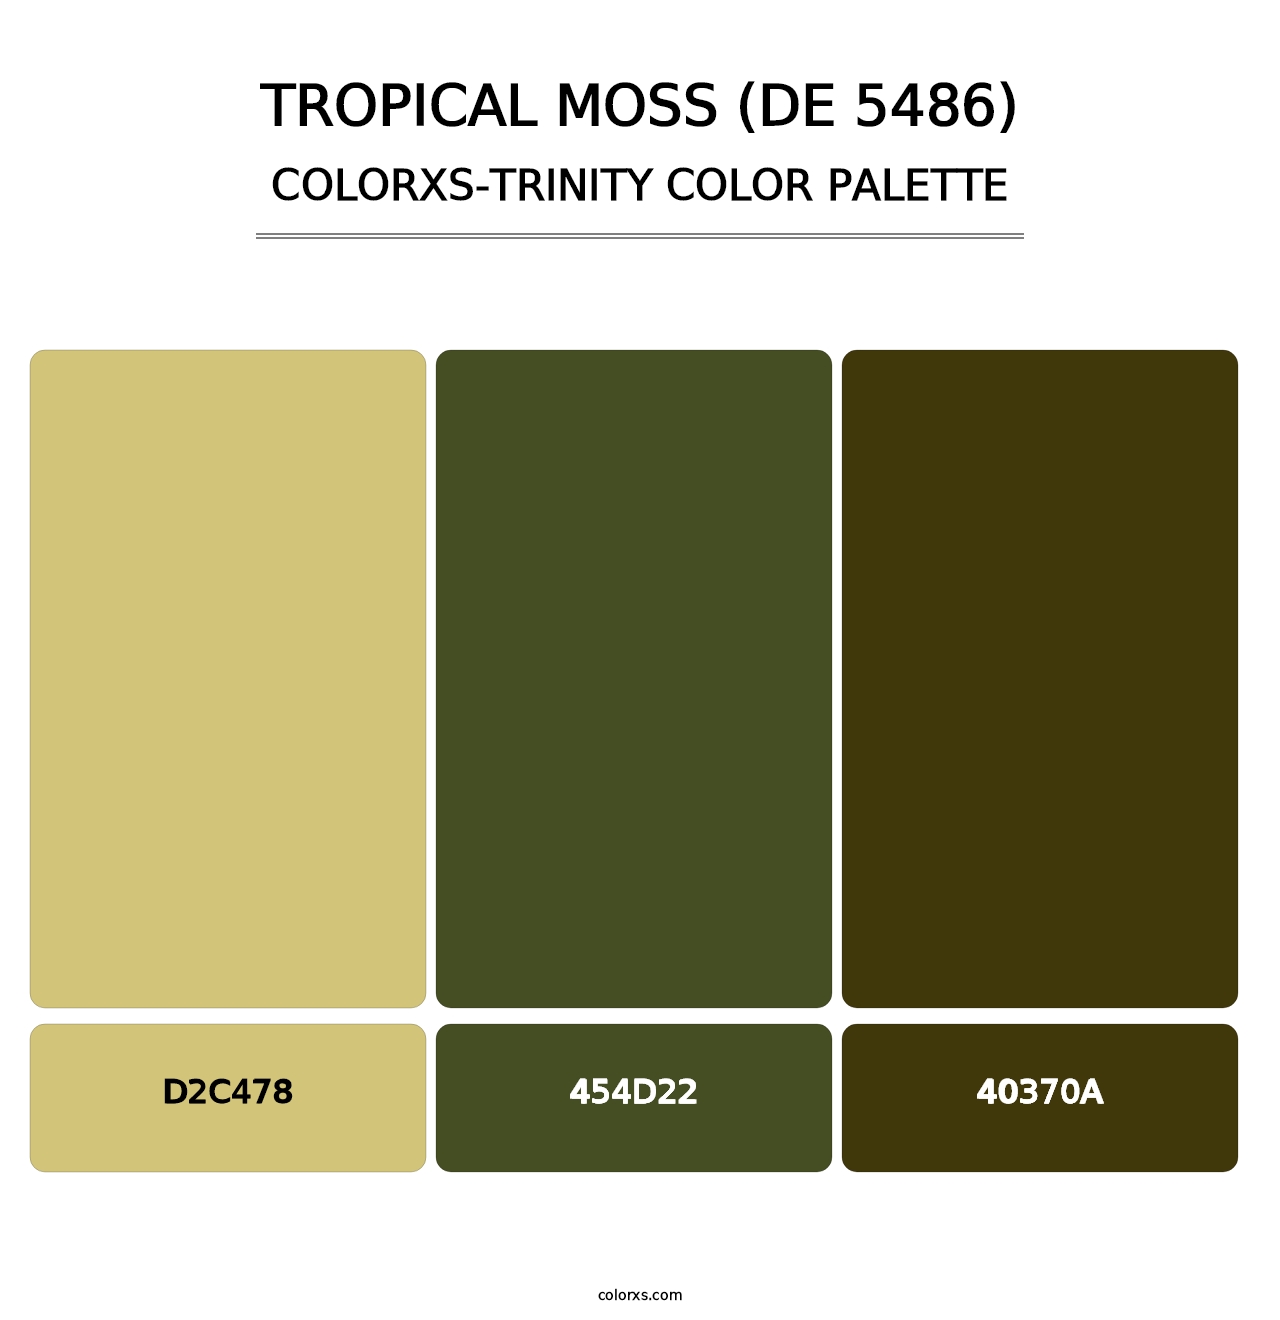 Tropical Moss (DE 5486) - Colorxs Trinity Palette